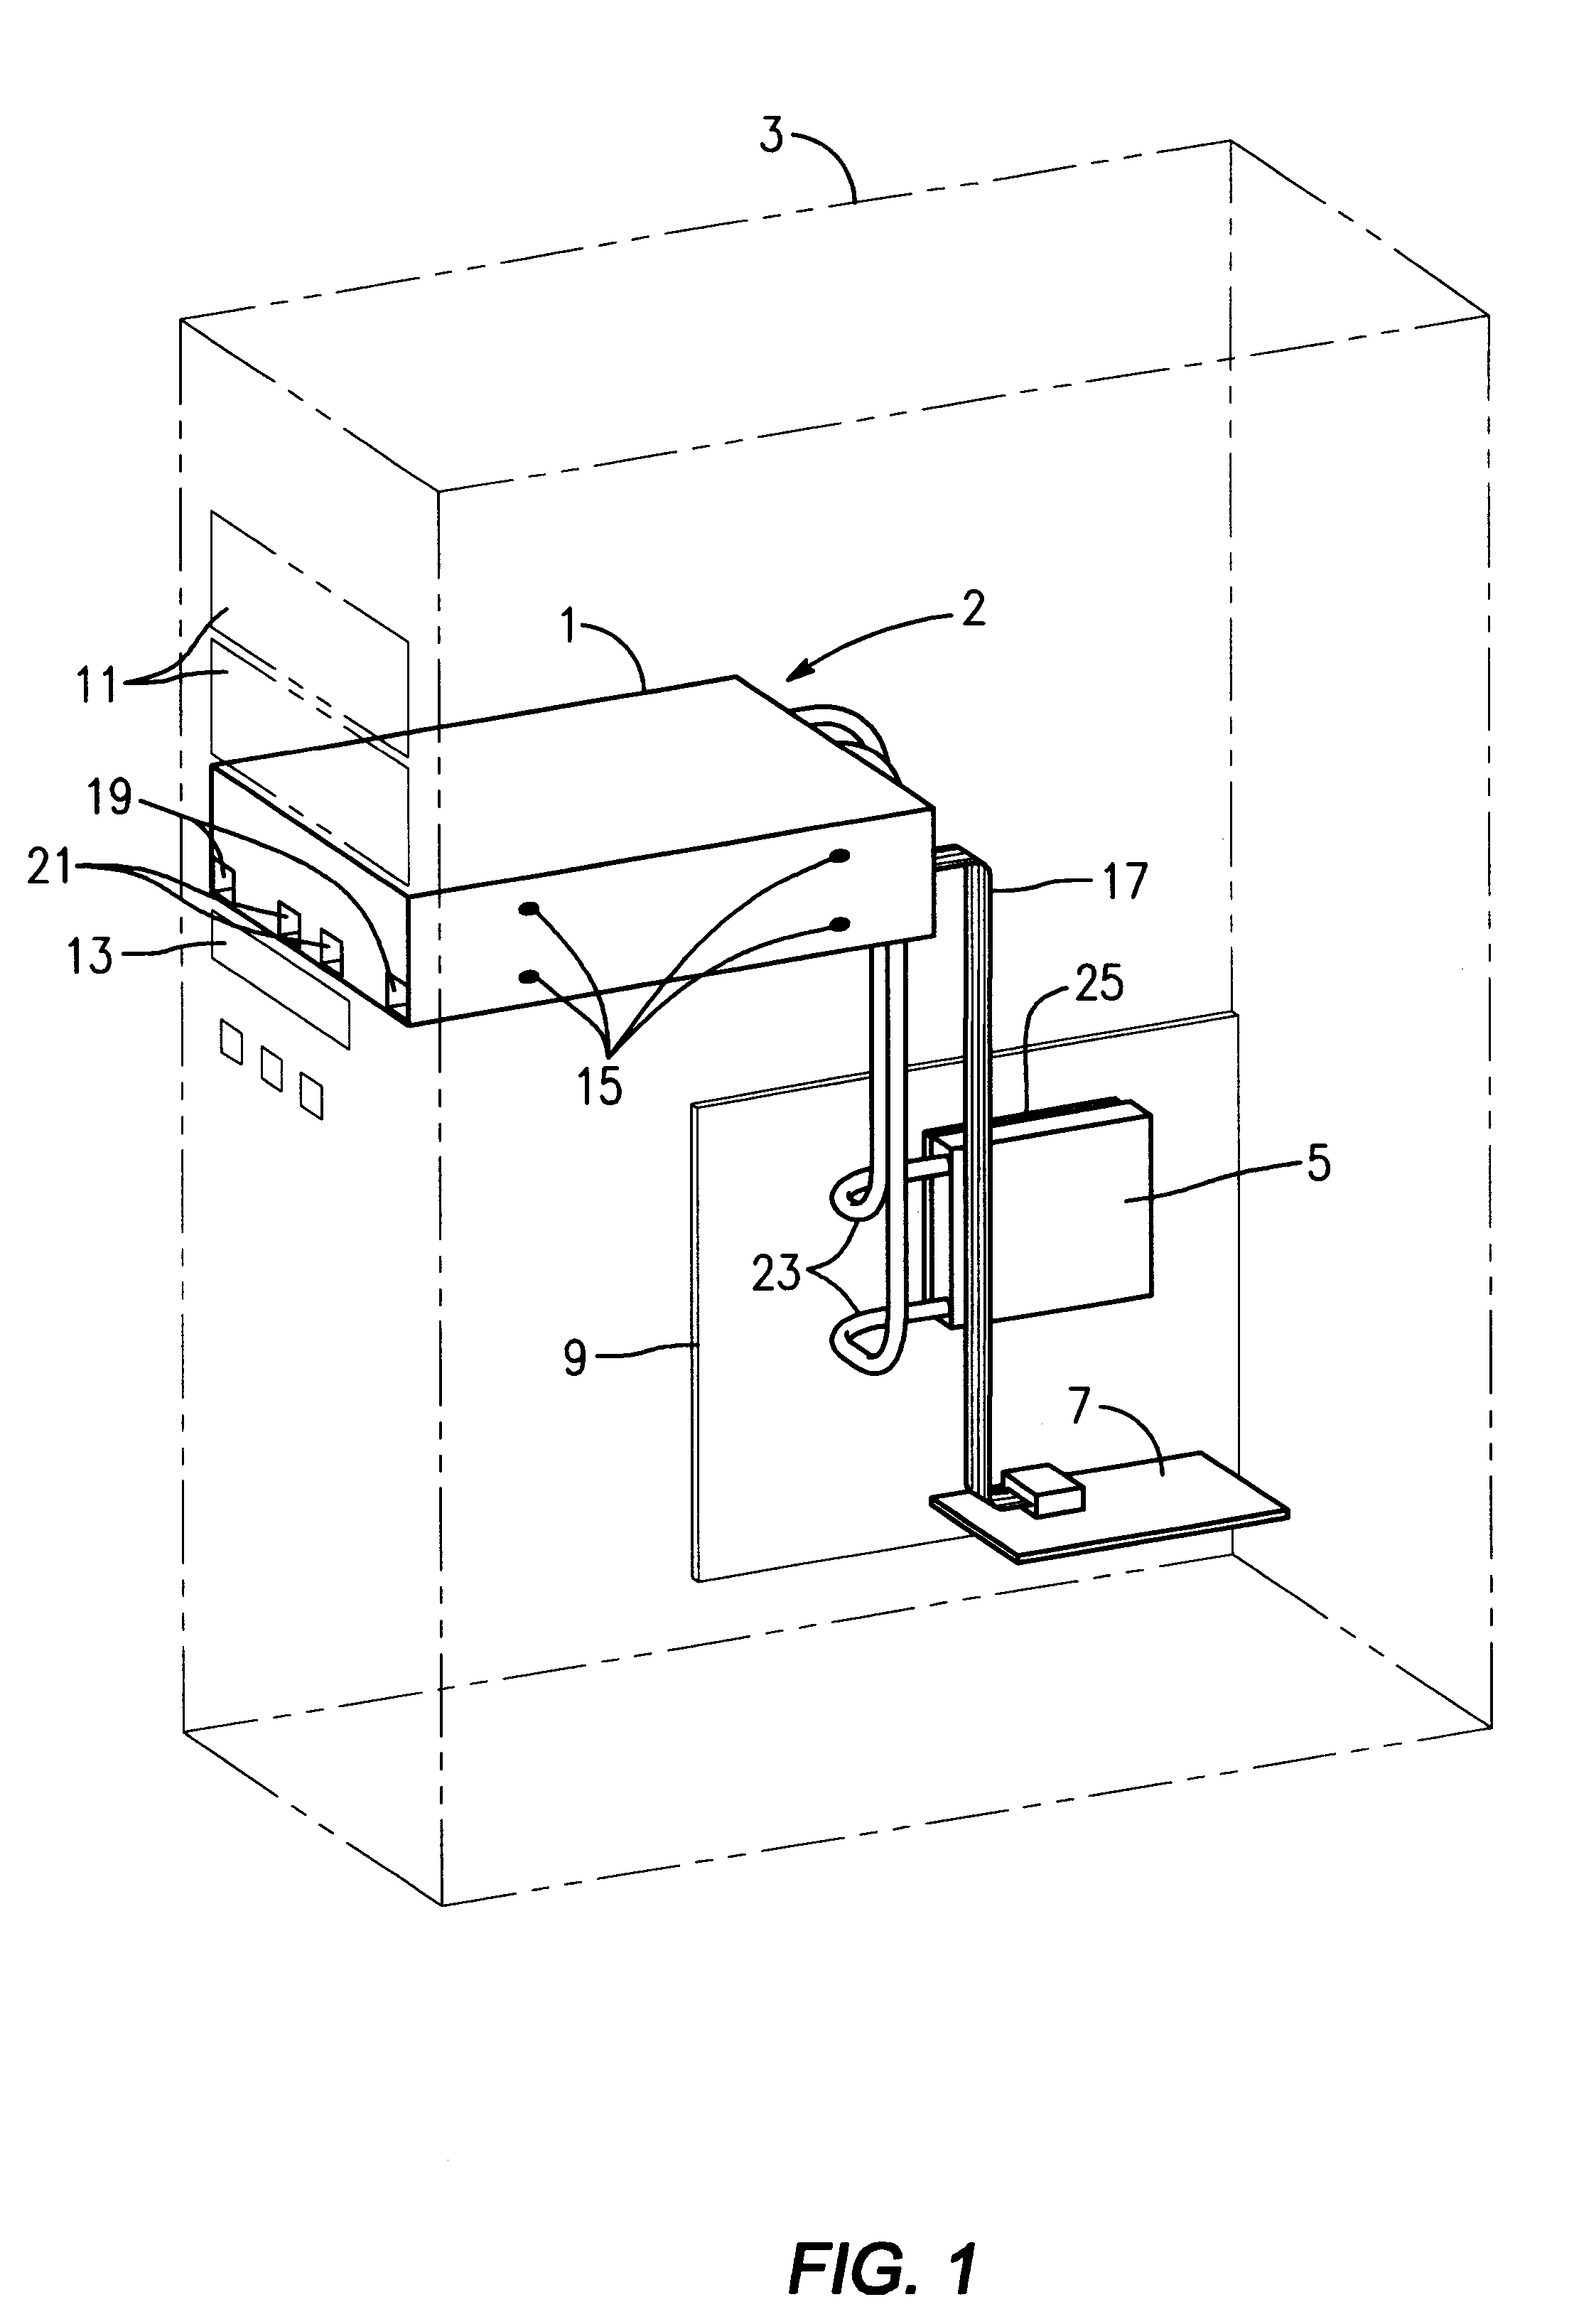 Computer enclosure cooling unit